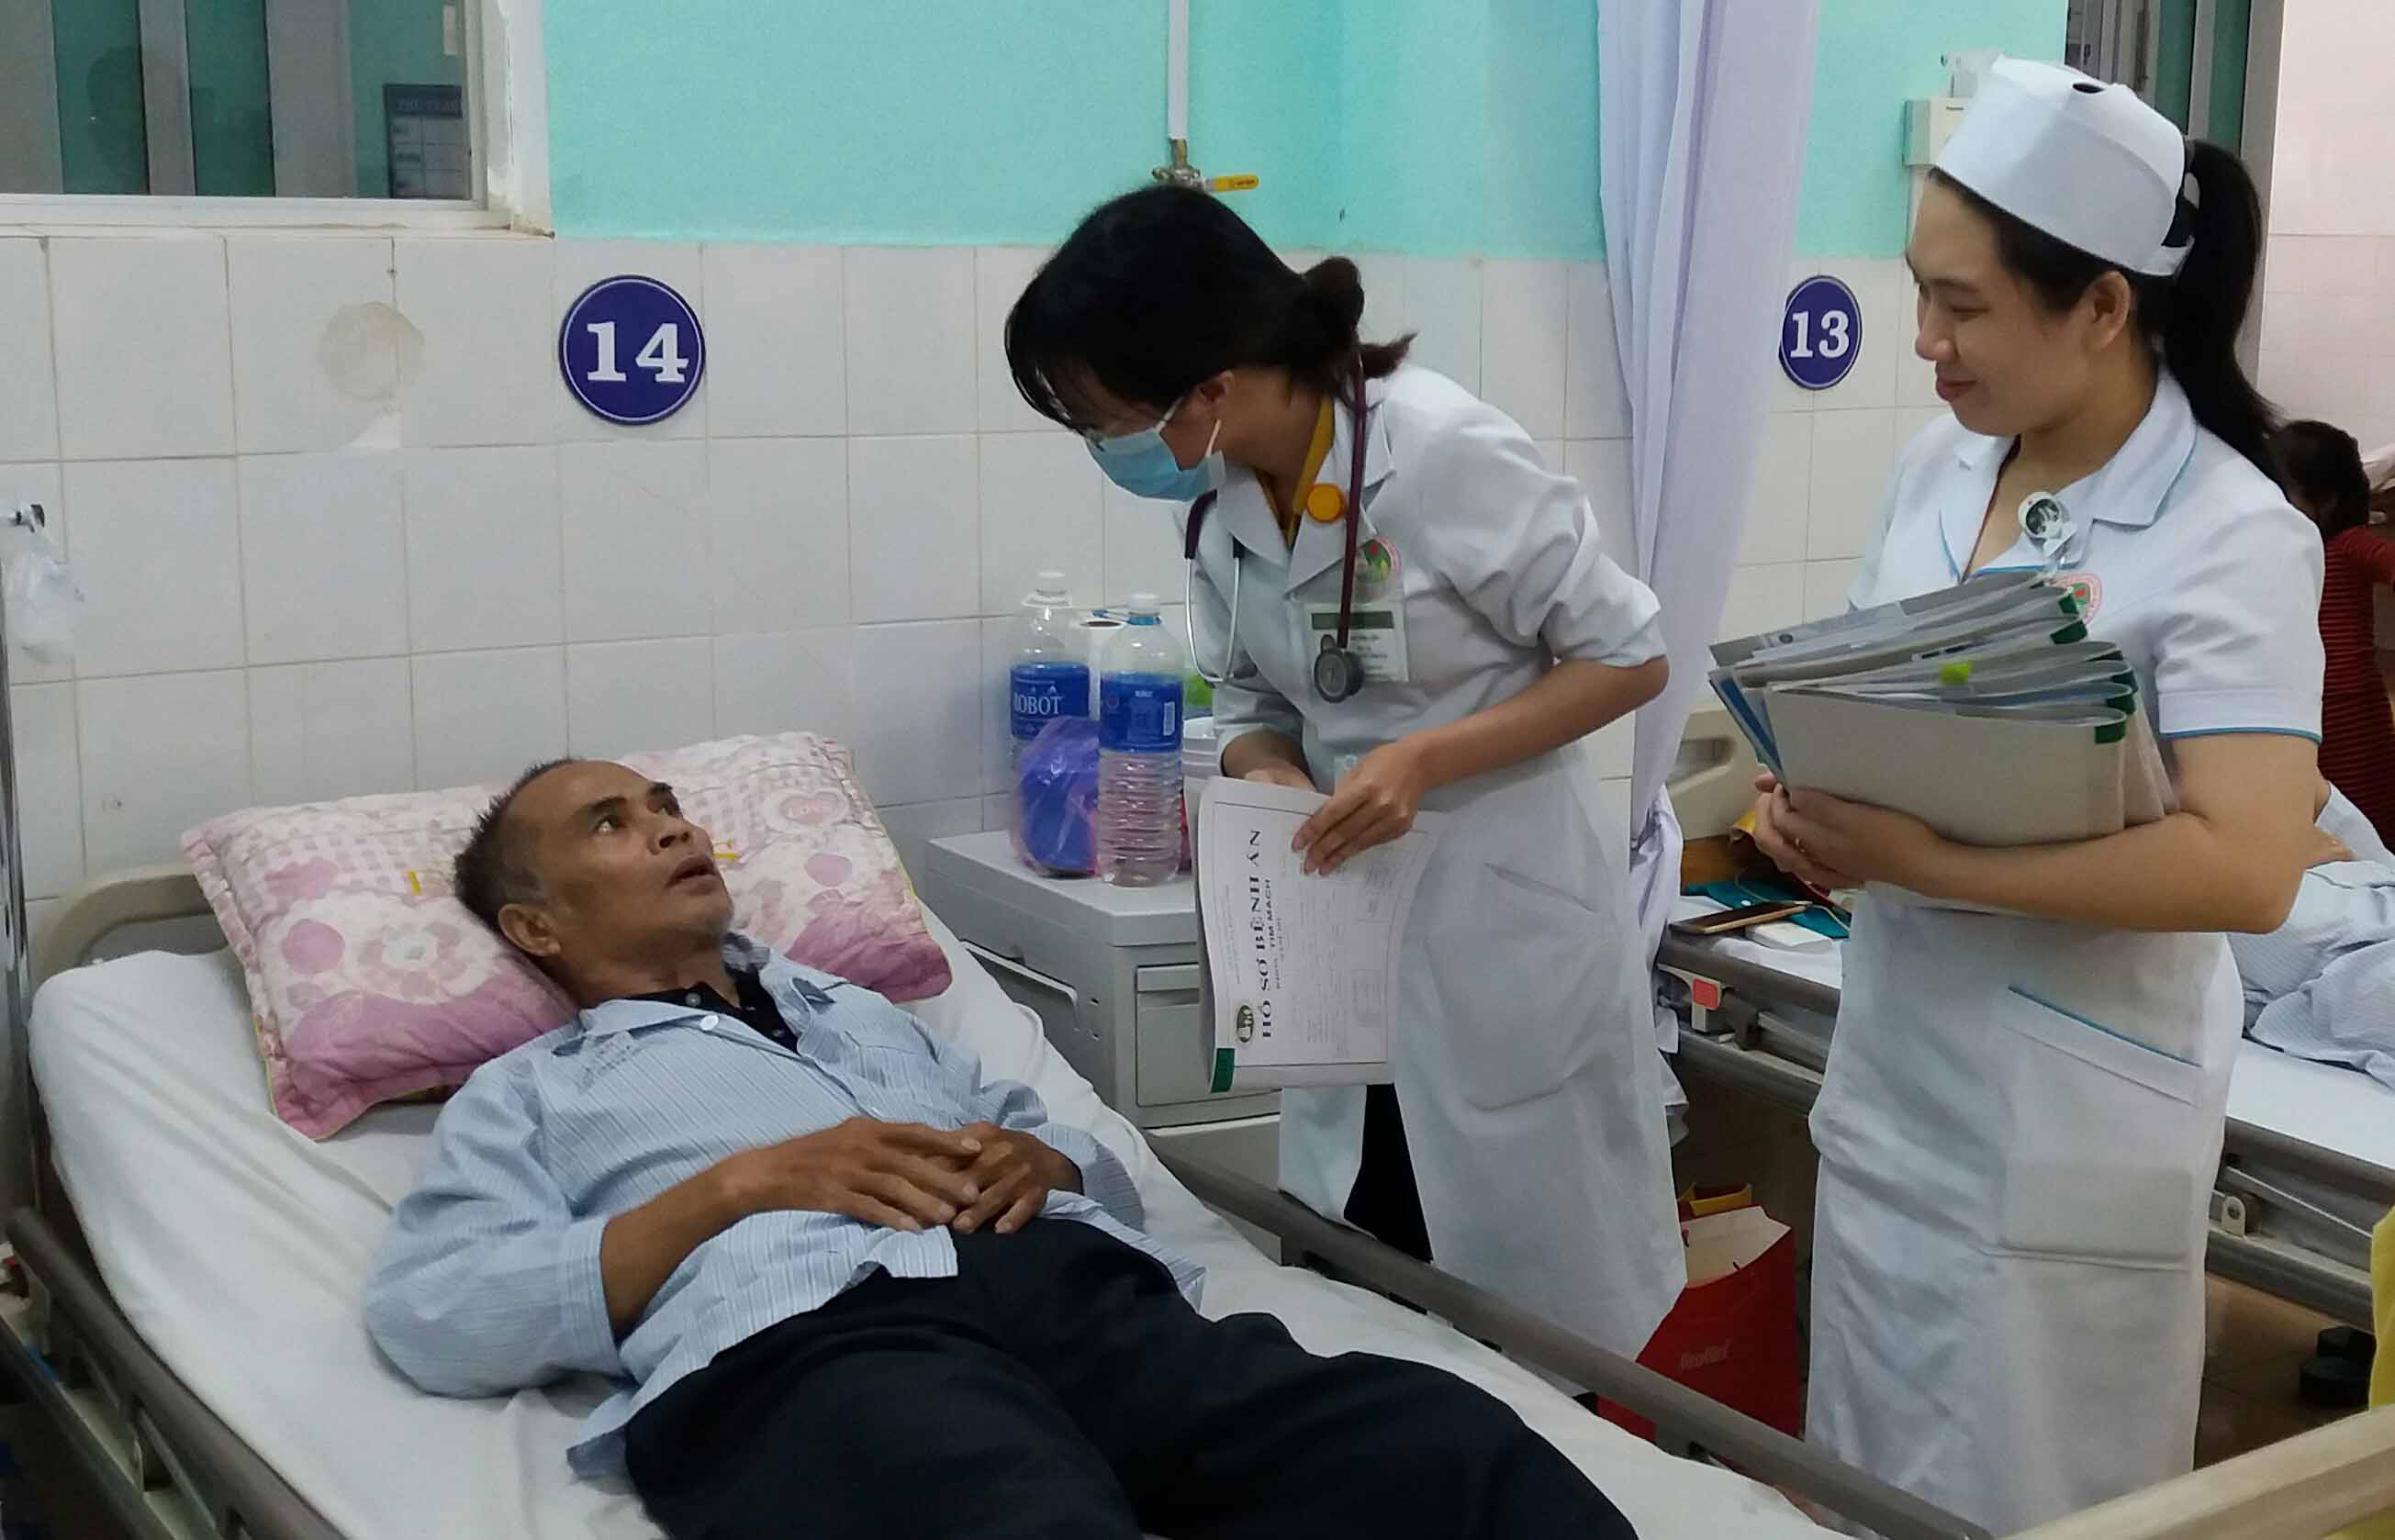 Năm 2020, Gia Lai phân bổ mức chi khám, chữa bệnh BHYT trên 854 tỷ đồng cho các cơ sở khám chữa bệnh trên toàn tỉnh. Ảnh: Như Nguyện